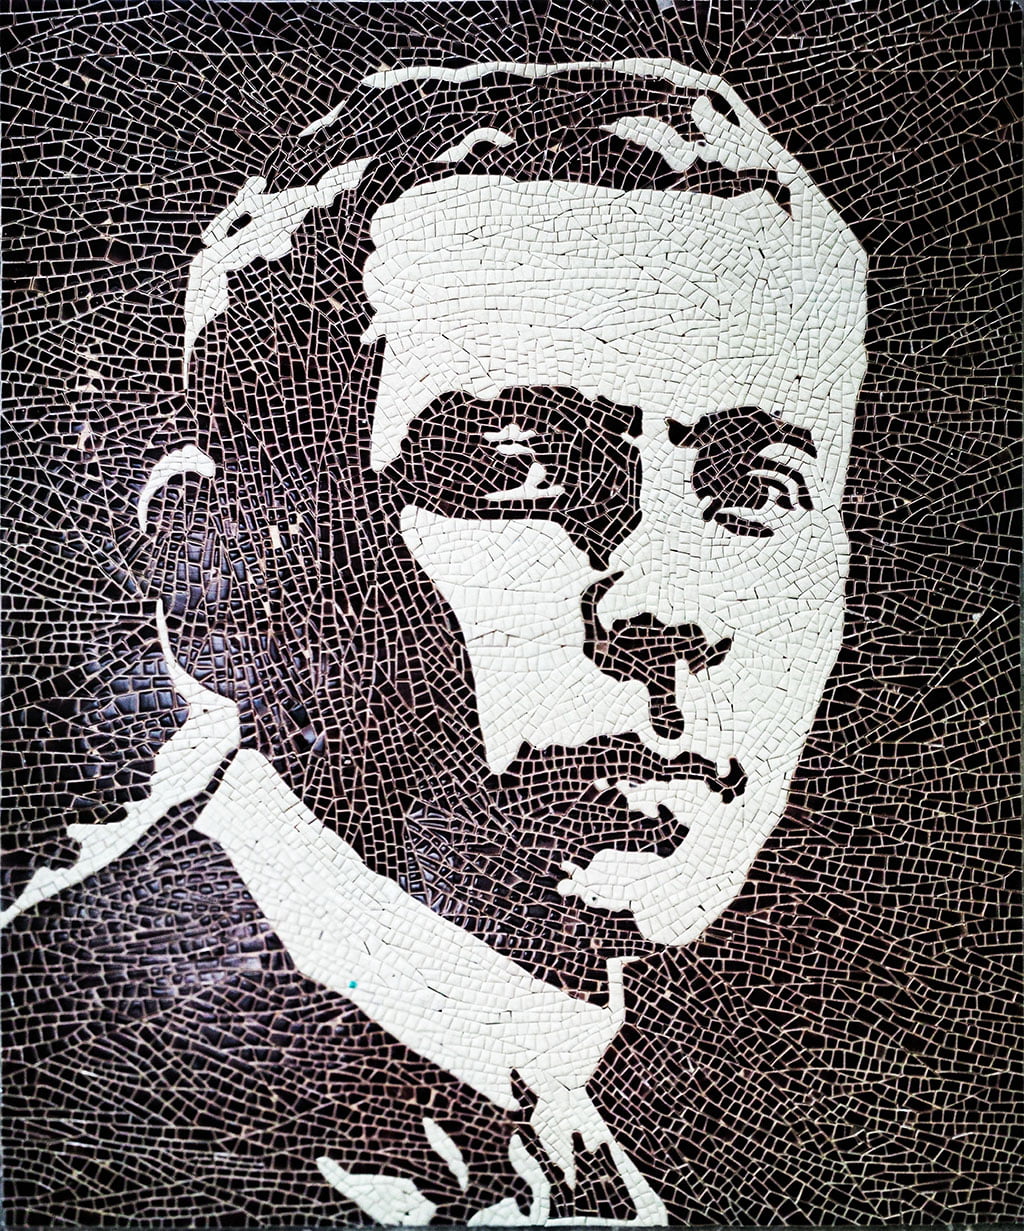 Mosaic gốm hiện diện tại trường Marie Curie Phố Trần Văn Lai – Hà Nội